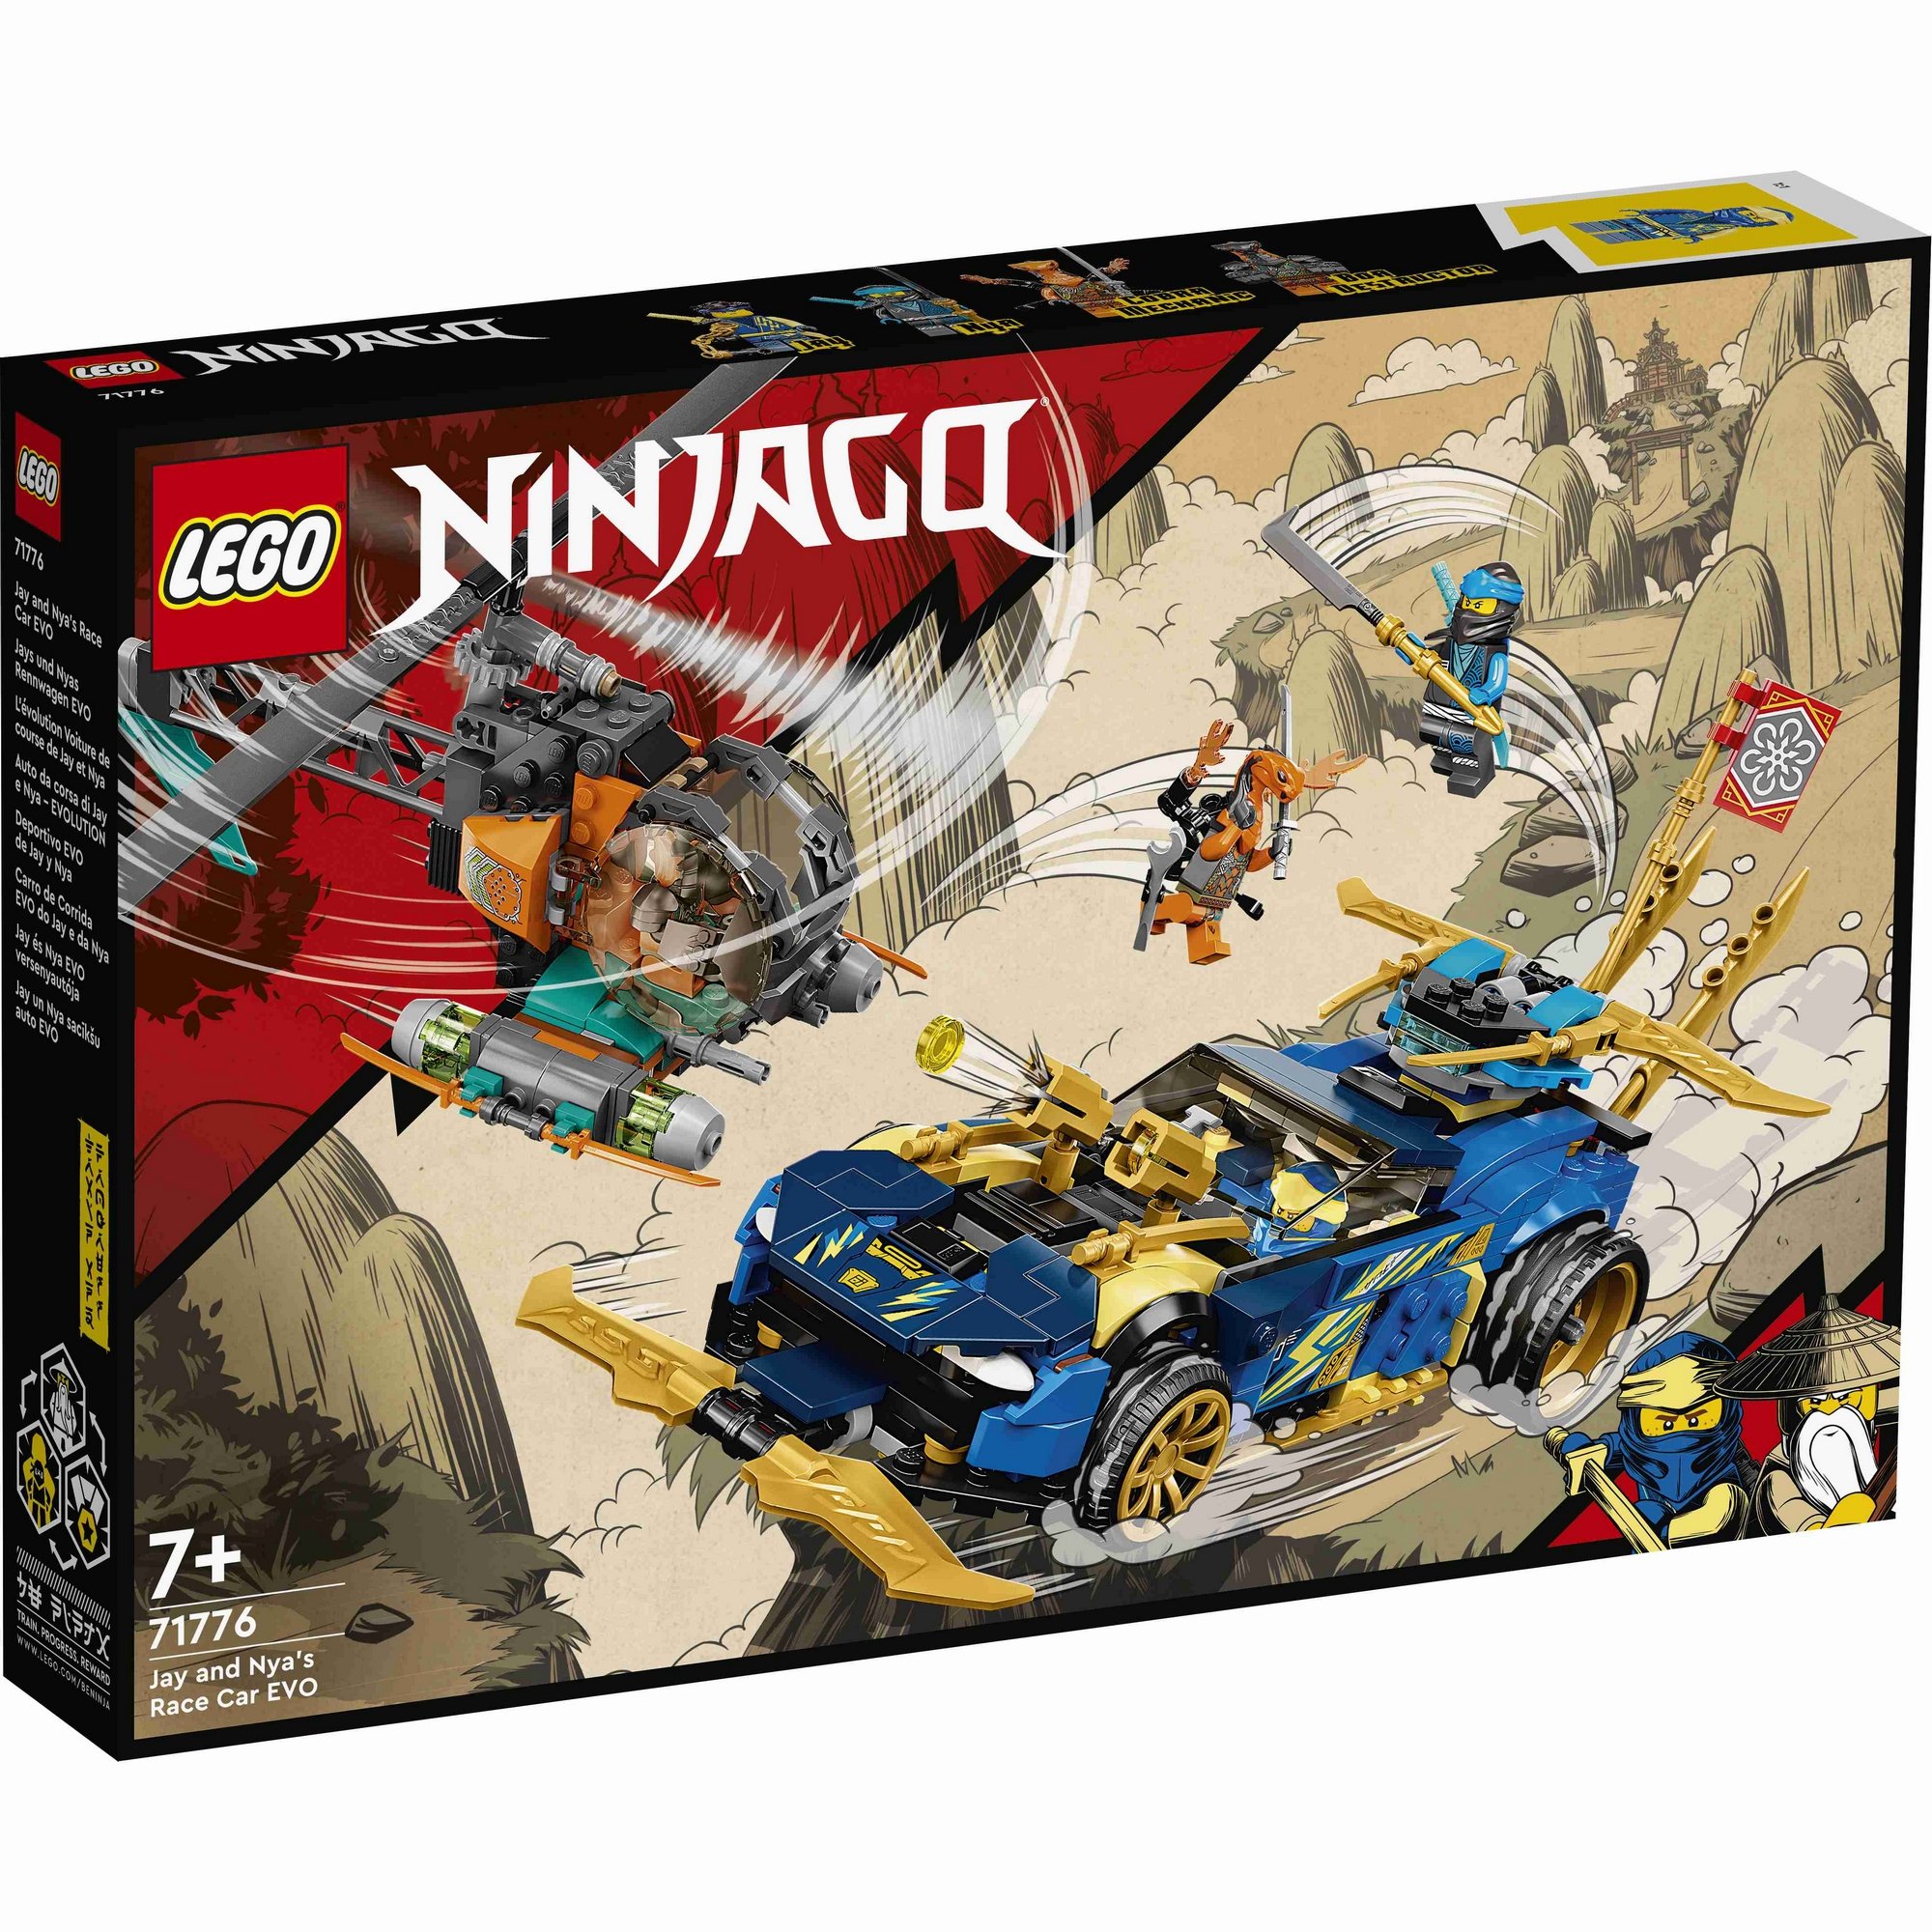 LEGO Ninjago 71776 Xe Đua Tốc Độ Của Jay &amp; Nya (536 chi tiết)